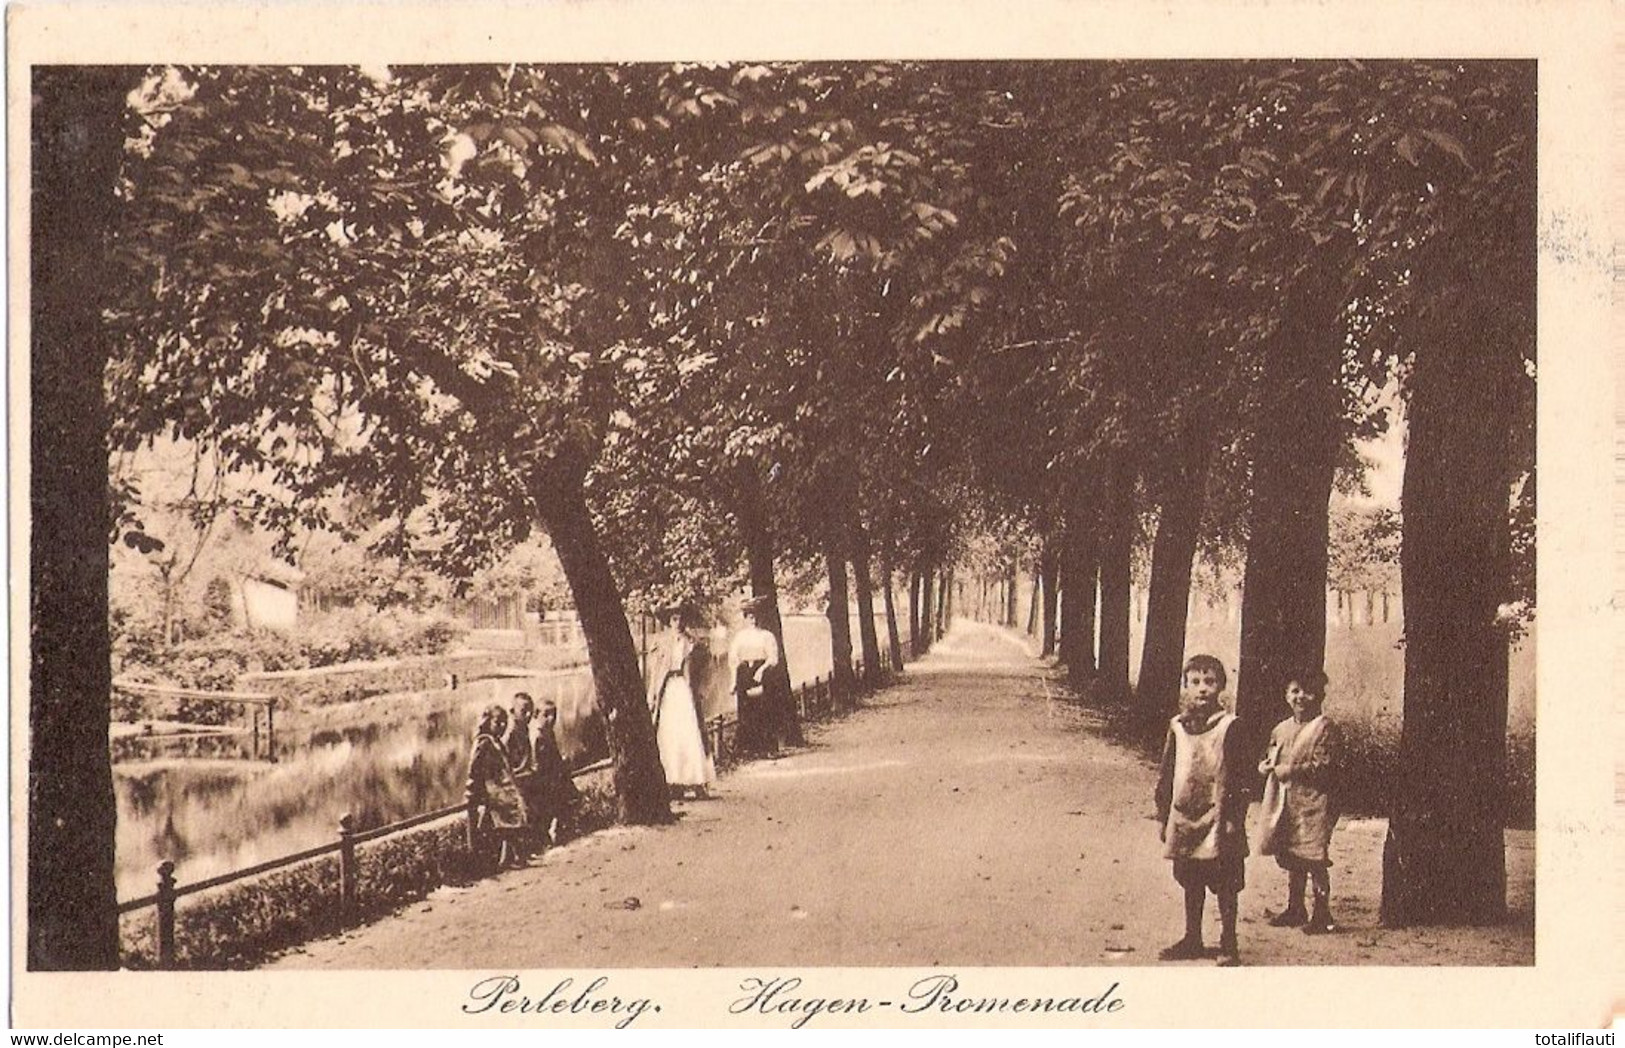 PERLEBERG Prignitz Hagen Promenade Links Wohlbehütete Kinder Elegante Damen Gelaufen 9.10.1920 Marke Abgefallen - Perleberg